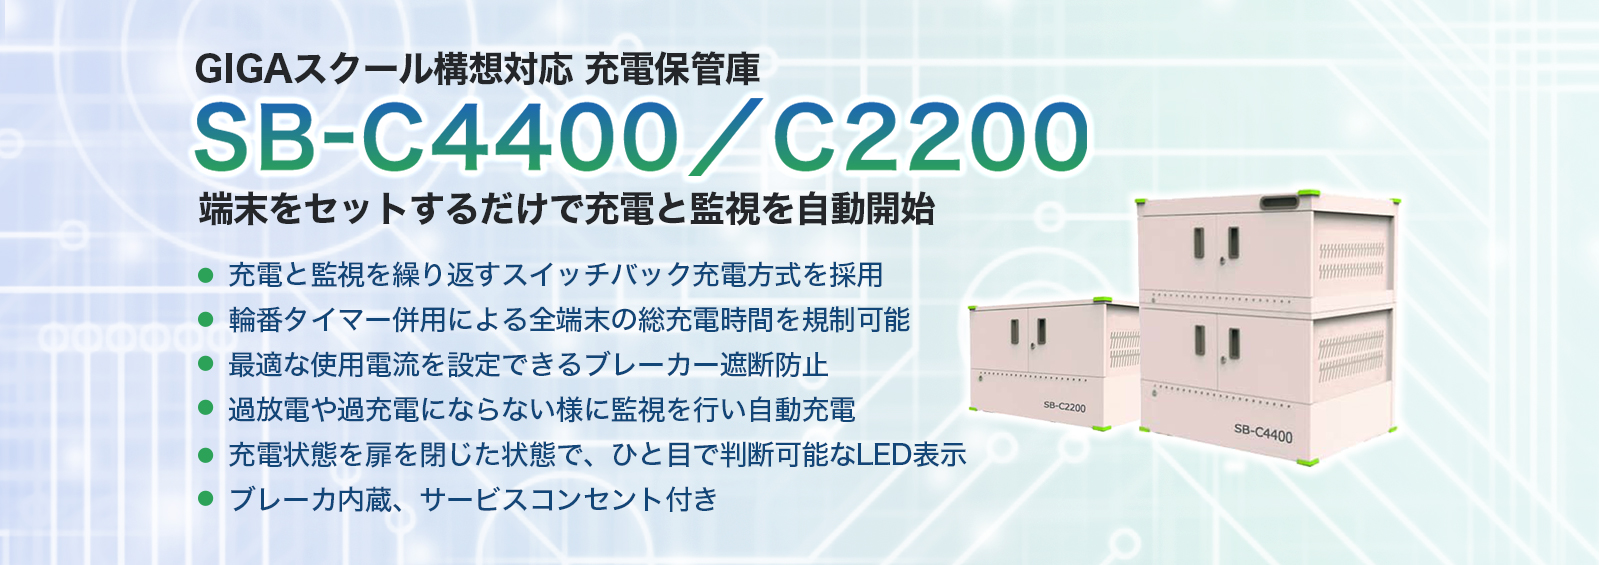 SB-C4400/C2200